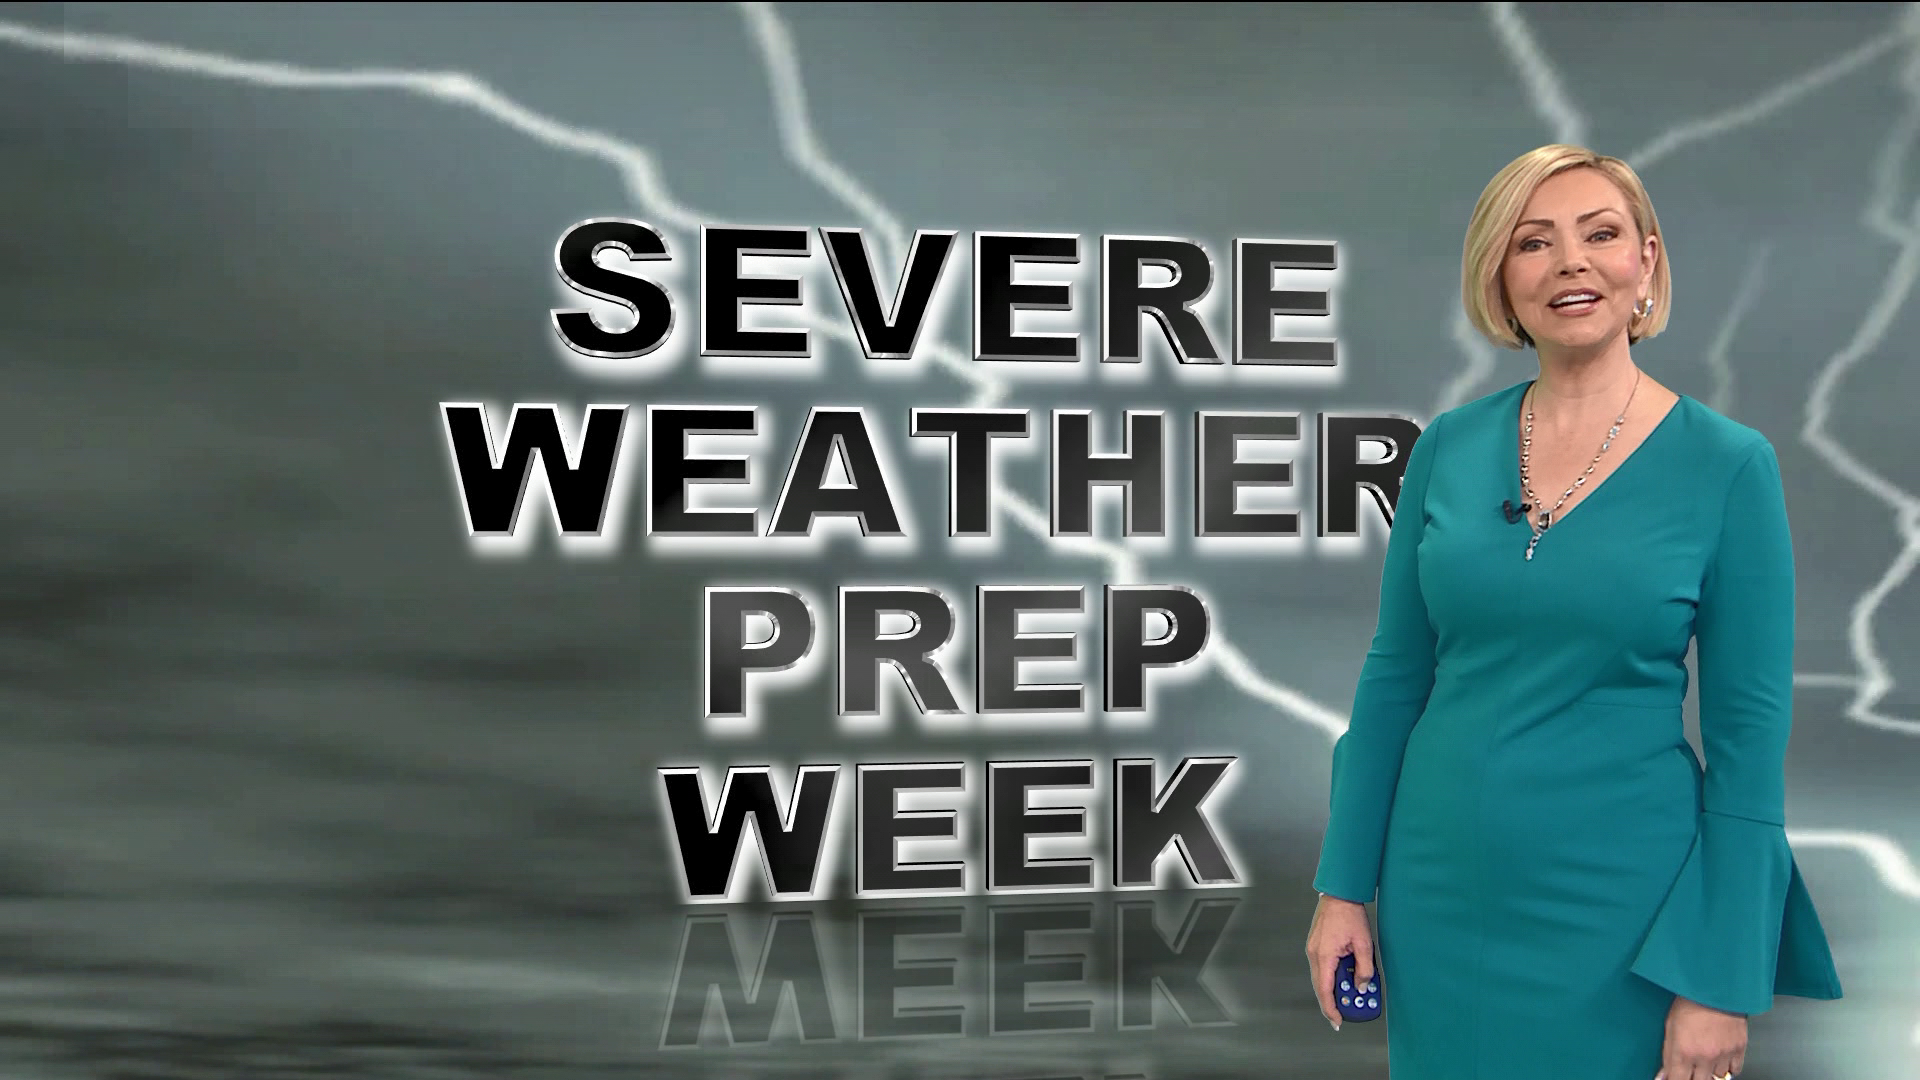 11Alive StormTracker meteorologist Samantha Mohr breaks down how to be prepared for severe weather for Severe Weather Preparedness Week.